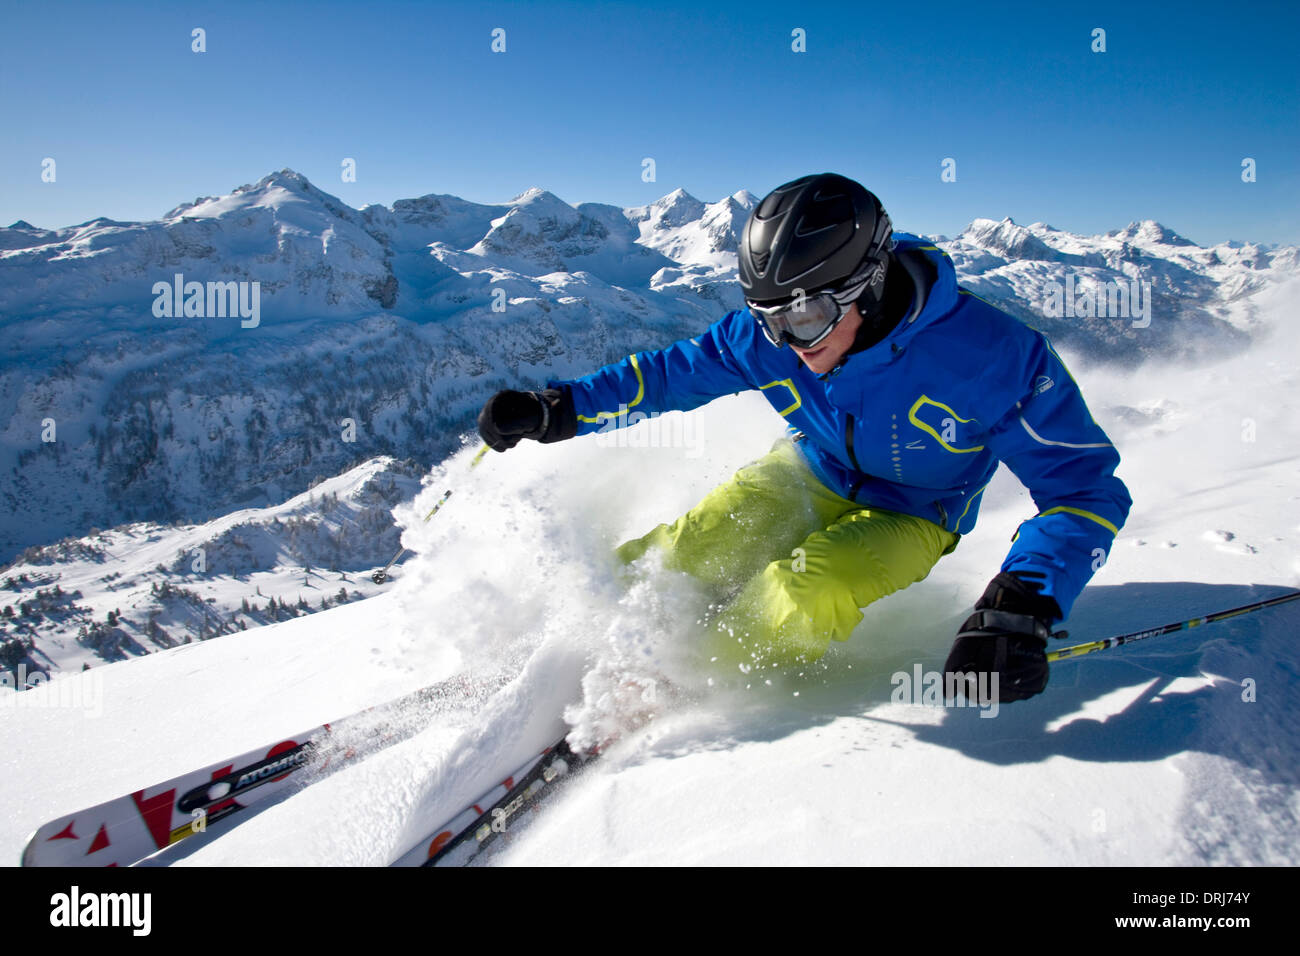 Freeriding with skis, Freeriding mit Skier Stock Photo